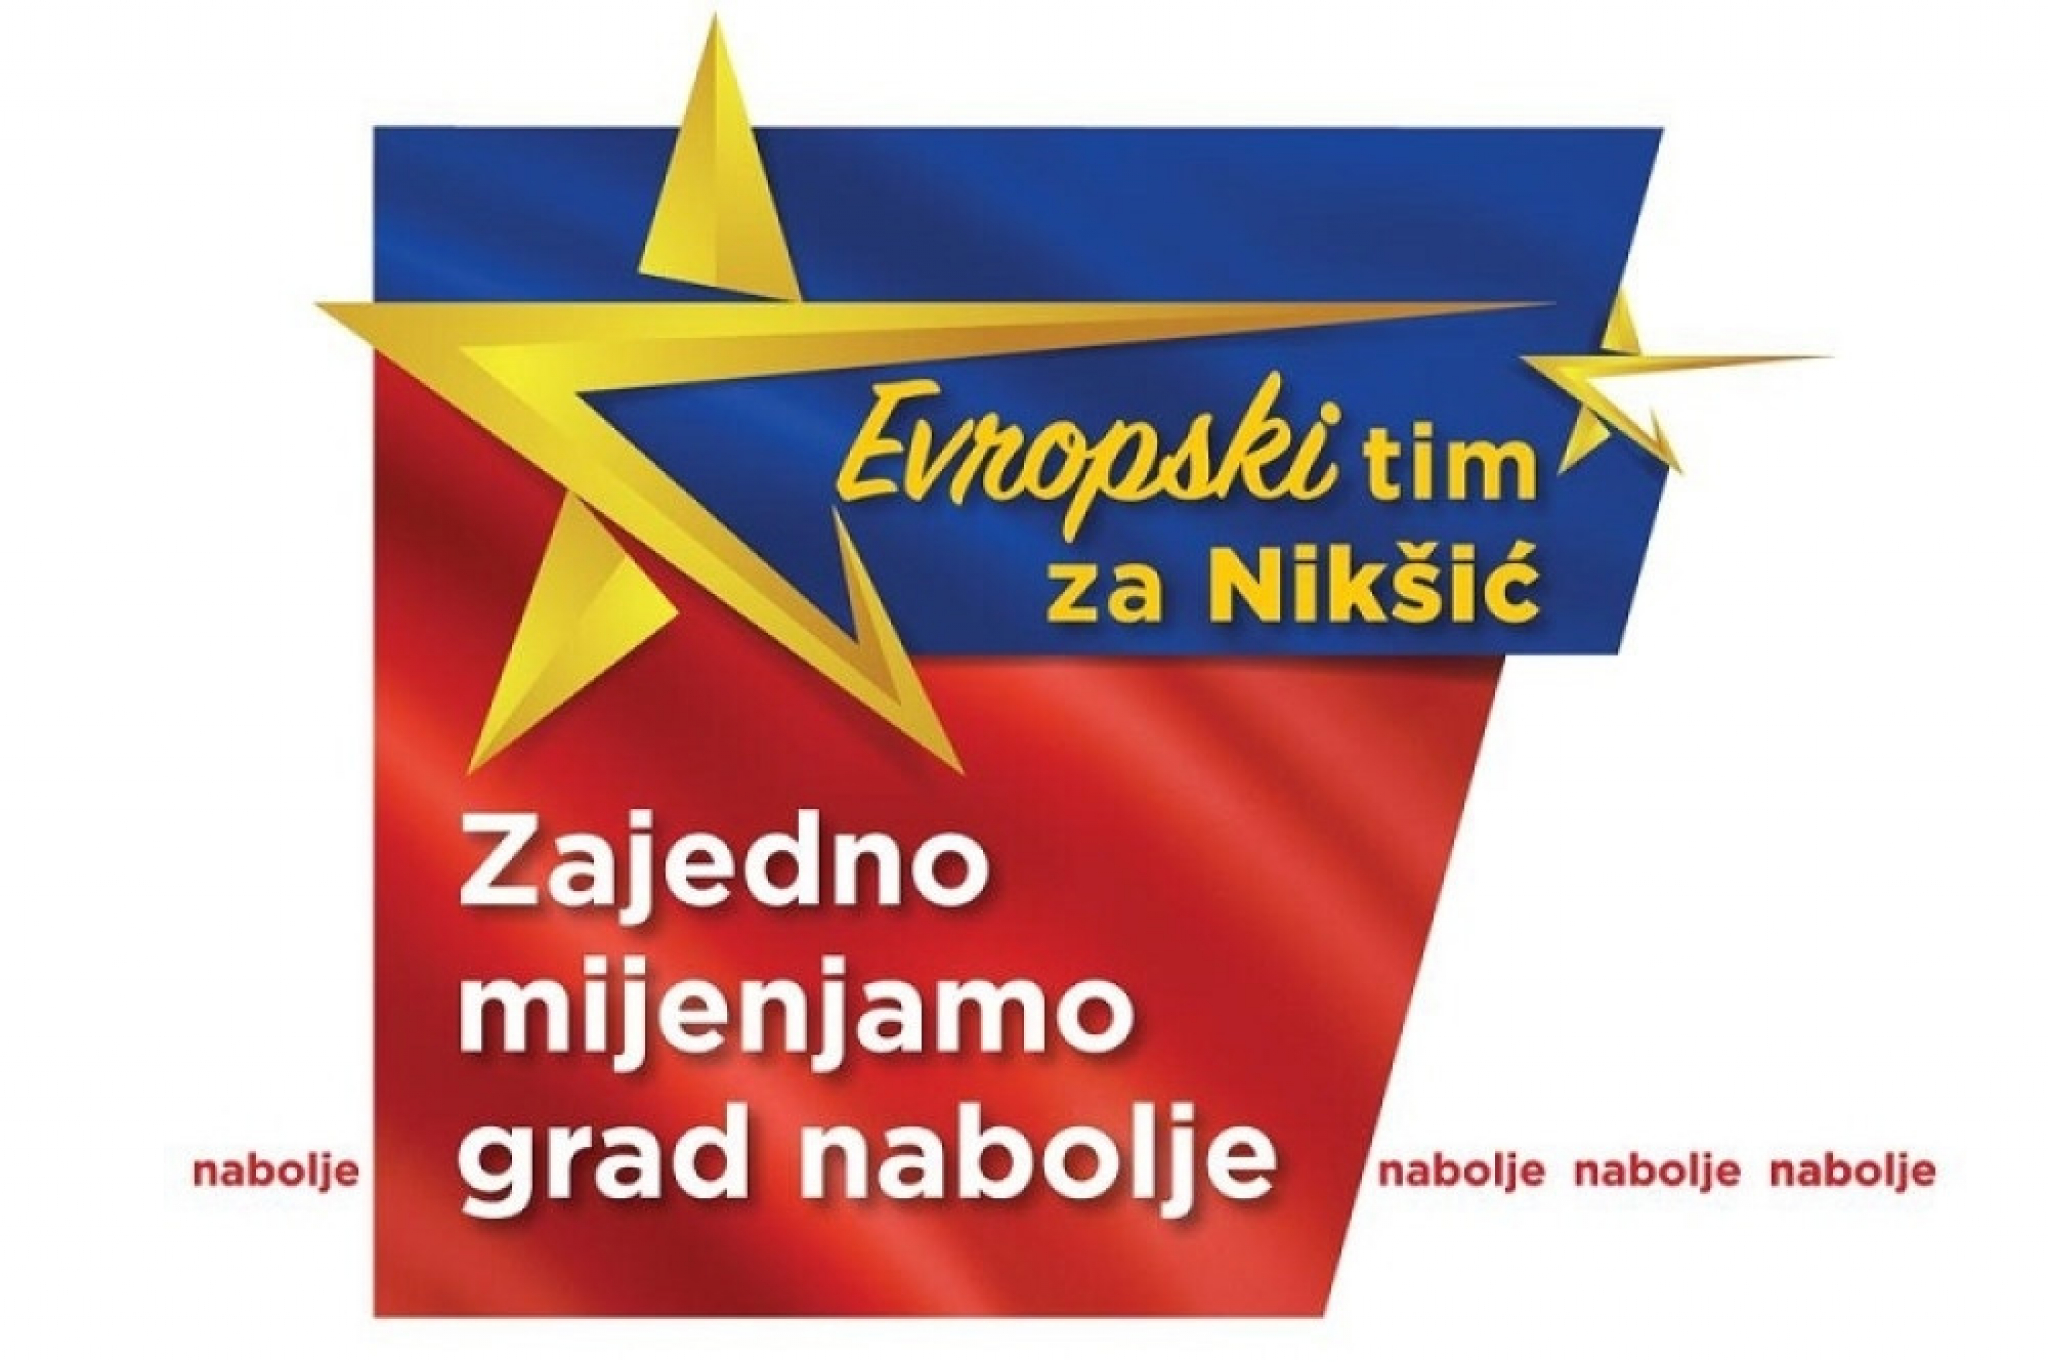 Evropski tim za Nikšić